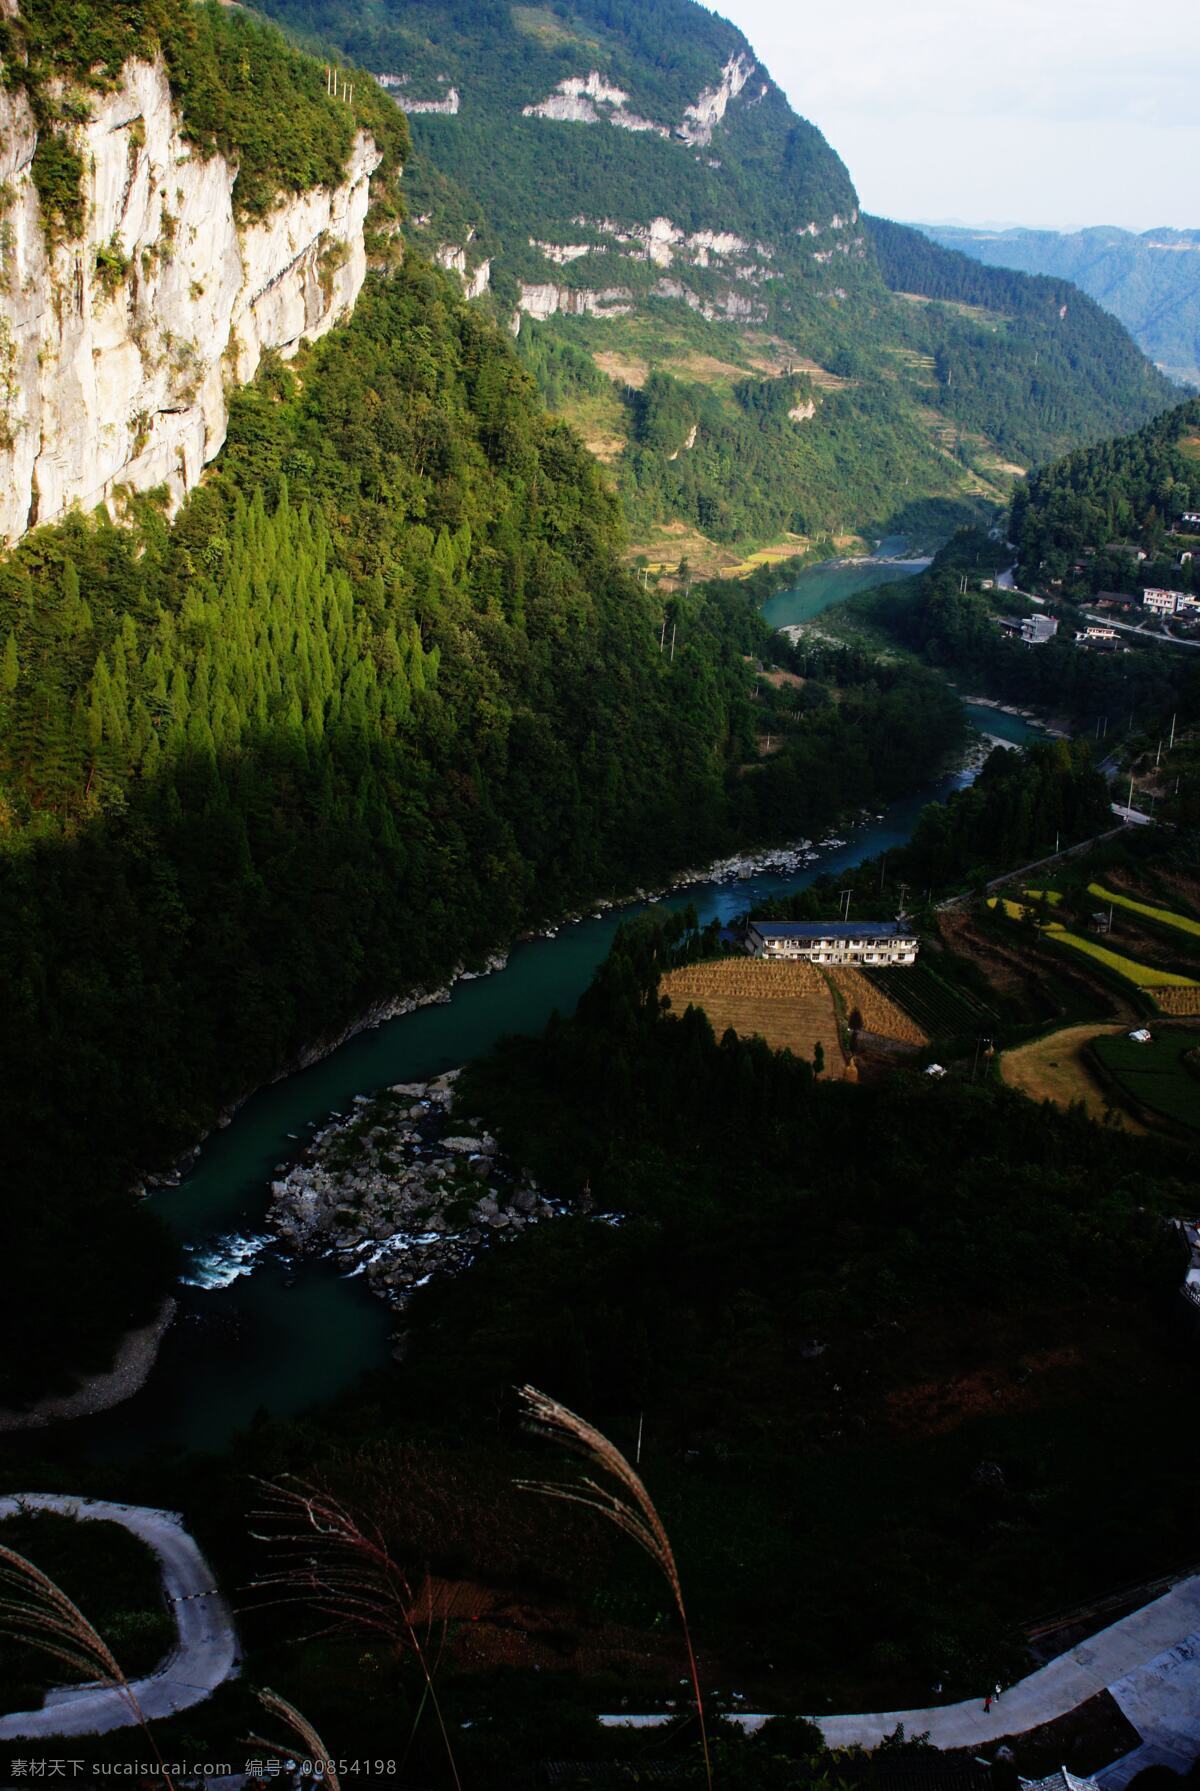 大美恩施 青山重叠 绝壁断崖 绿水环抱 弯曲河流 自然风景 旅游摄影